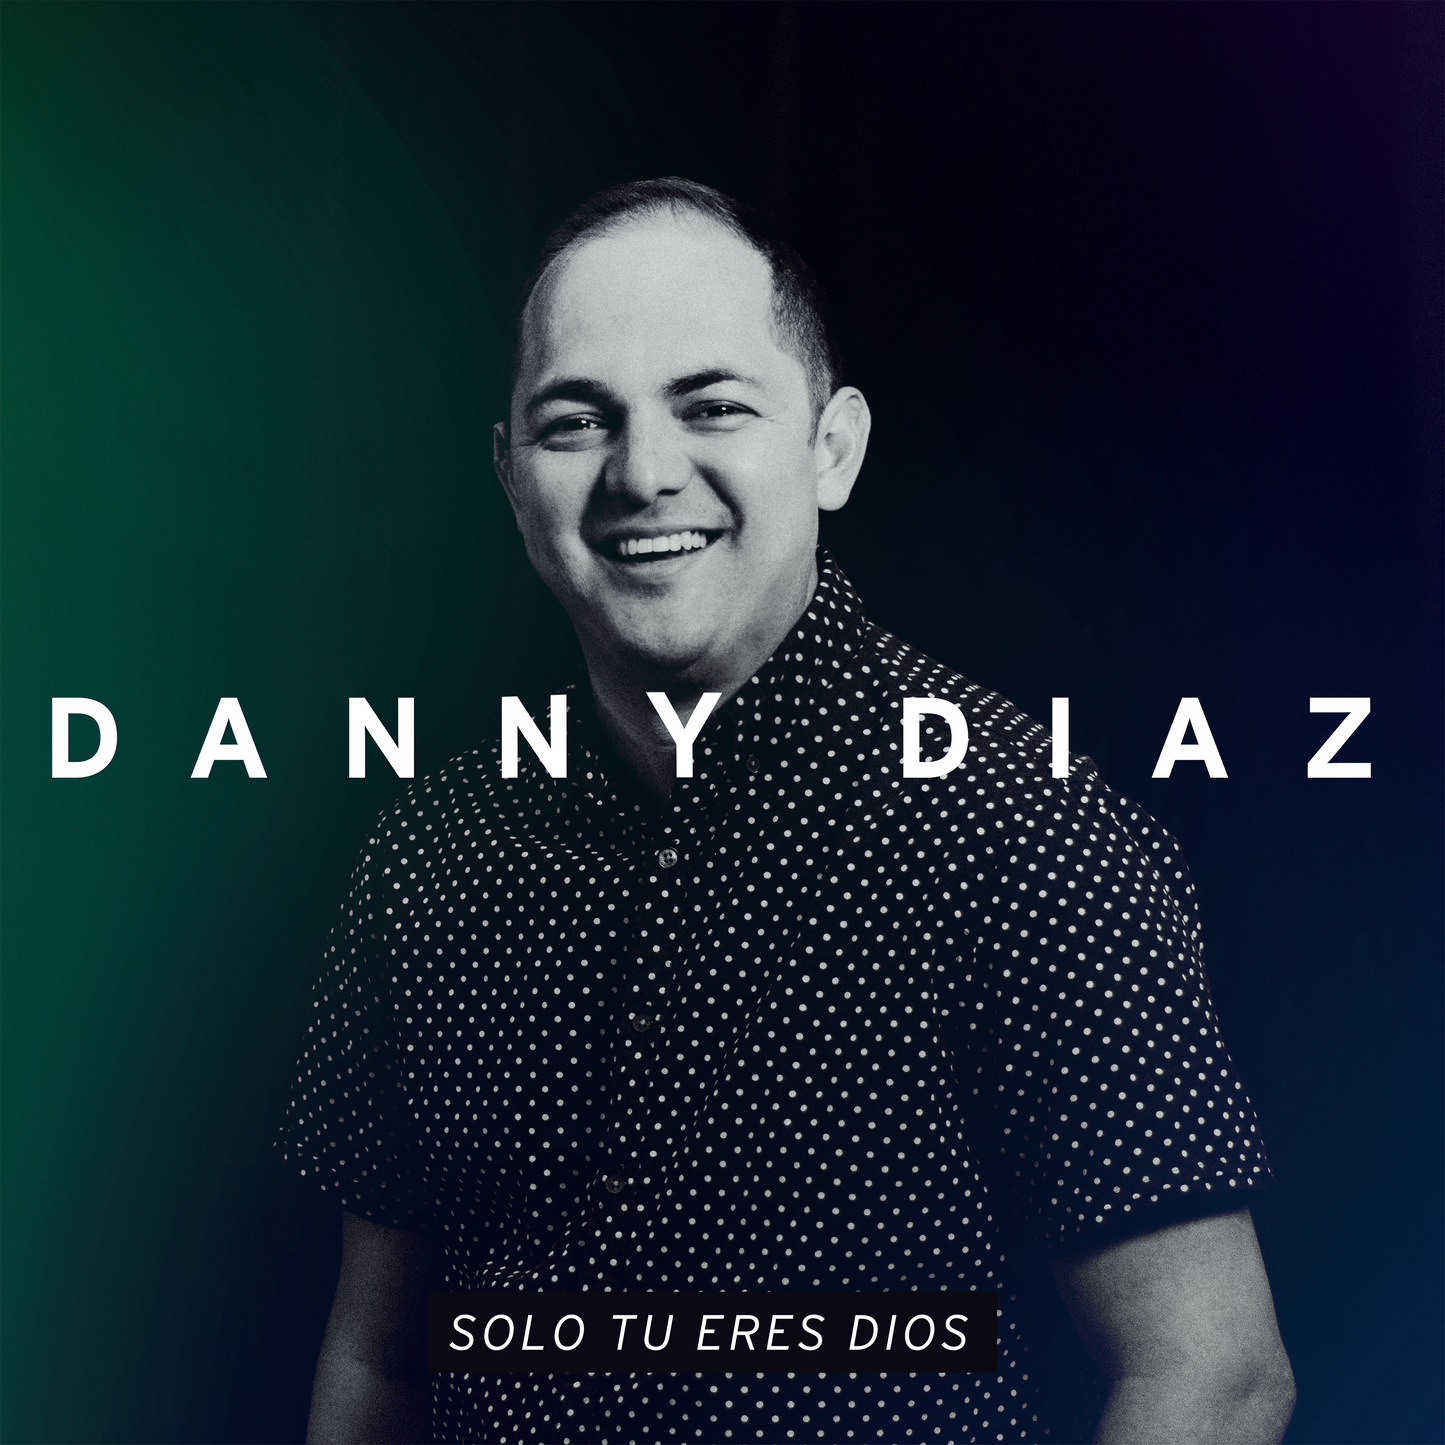 Like In Heaven (Mike Reyes) - Danny Diaz- Multitrack 